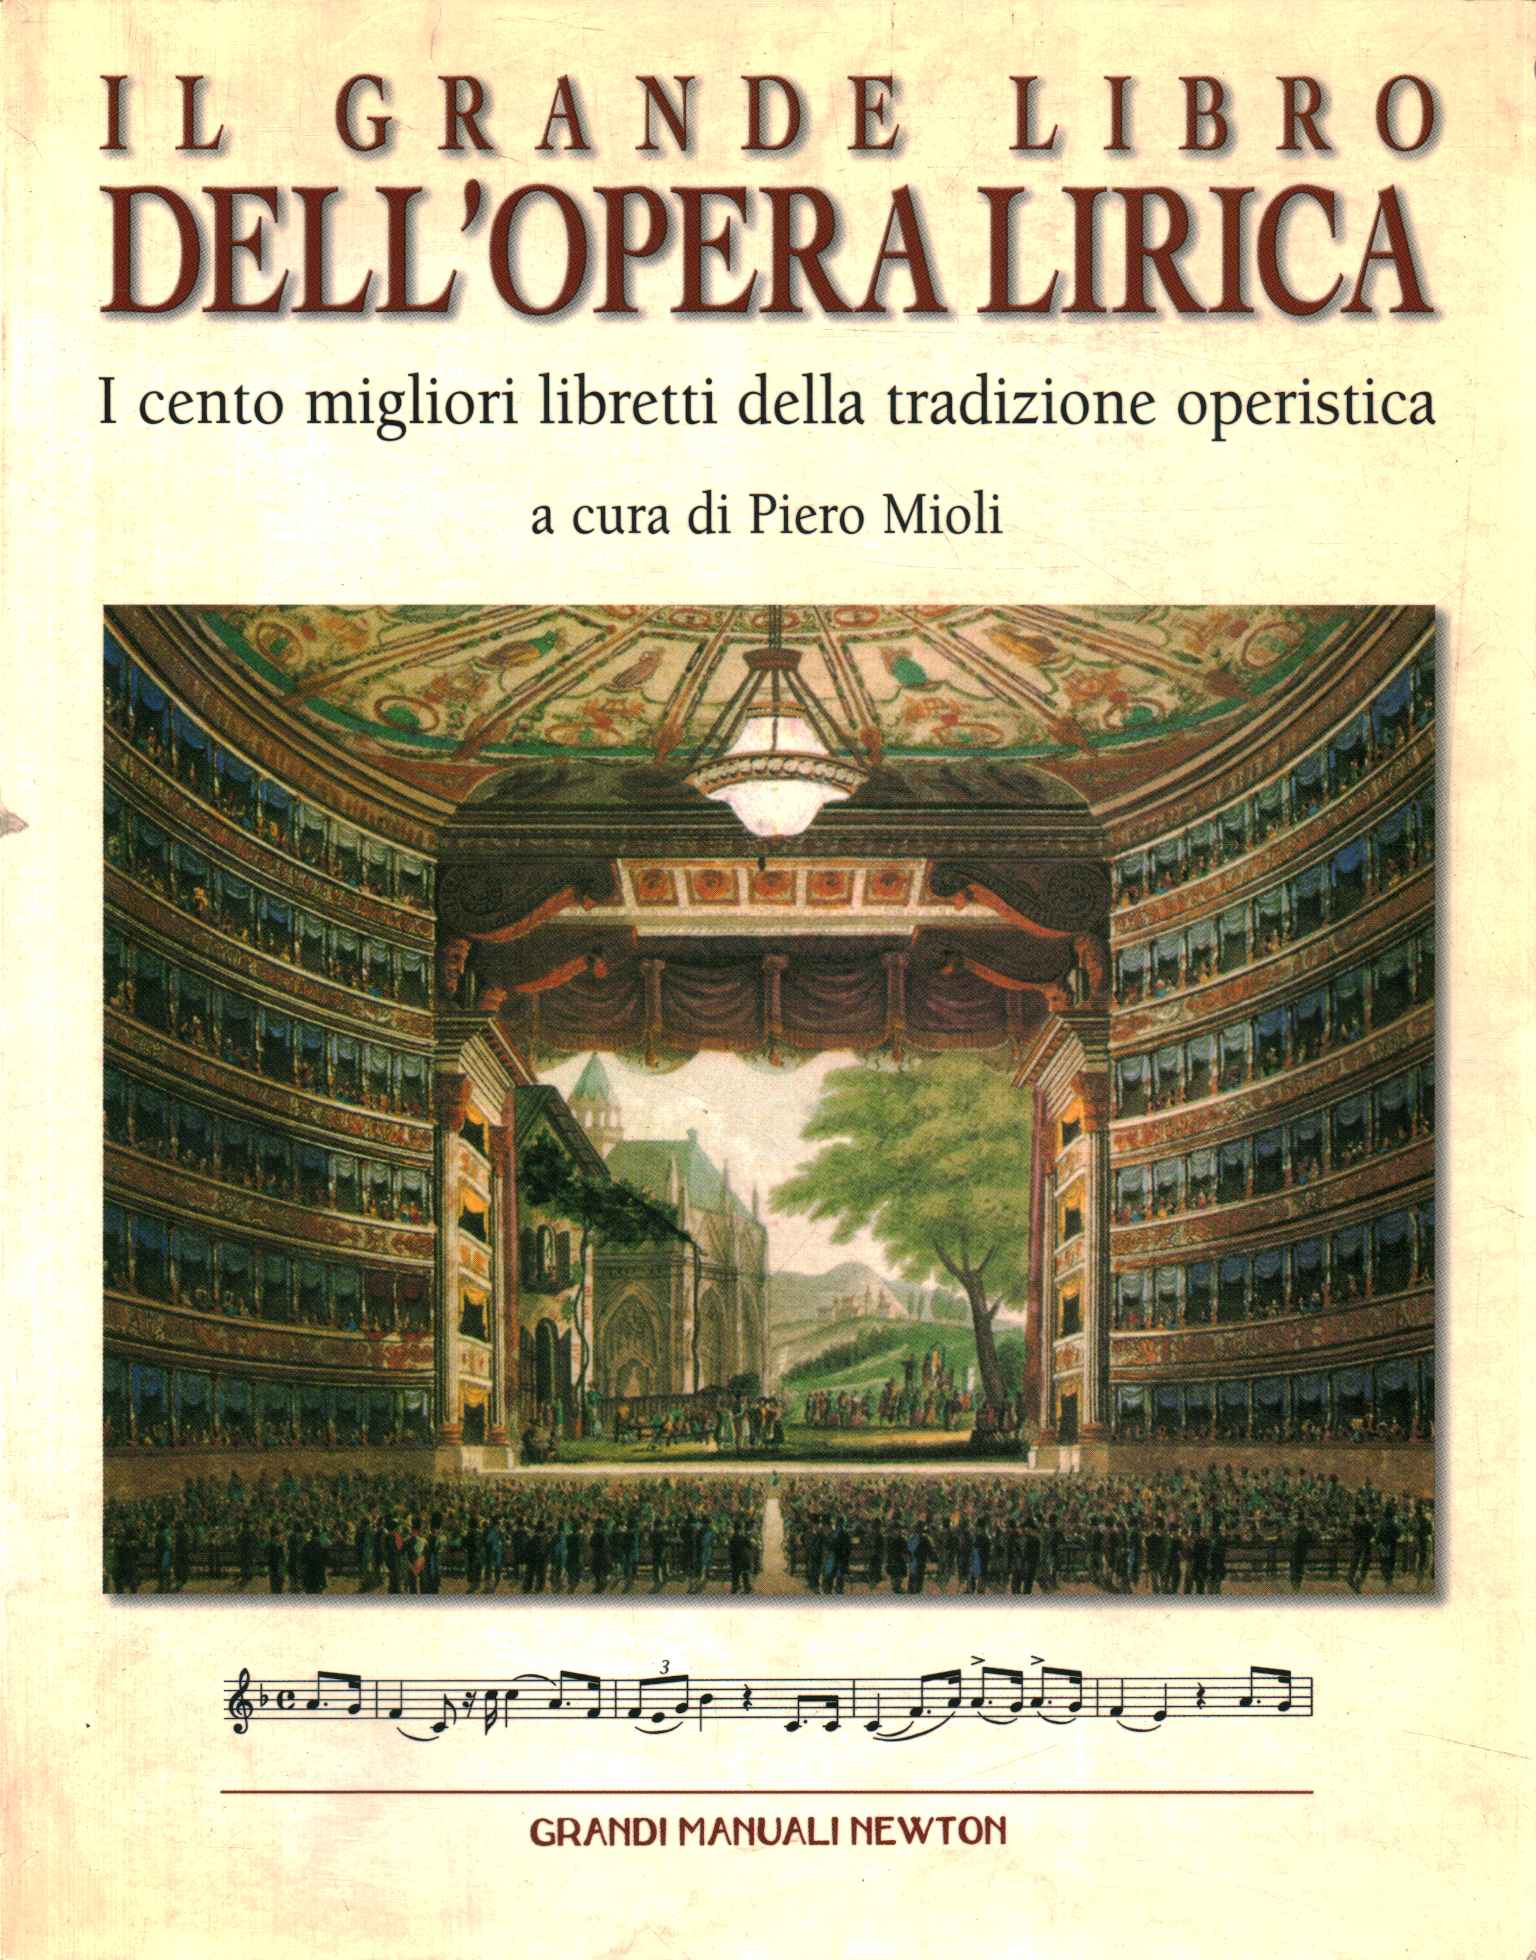 El gran libro de la ópera.